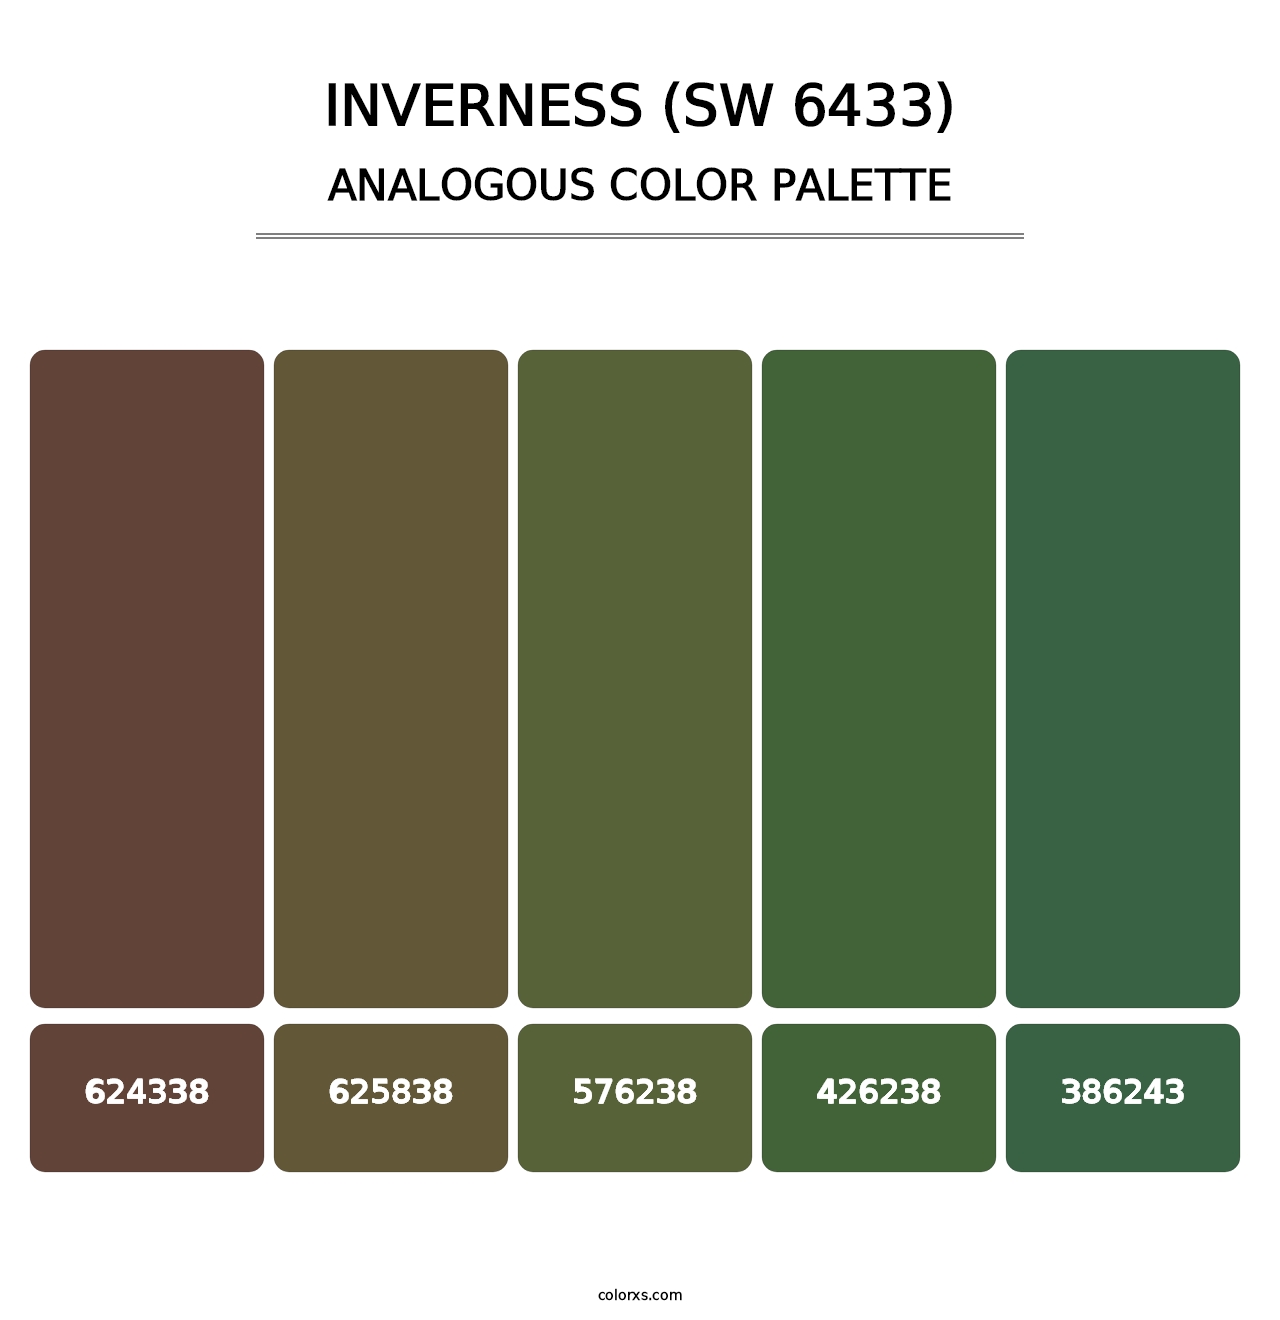 Inverness (SW 6433) - Analogous Color Palette